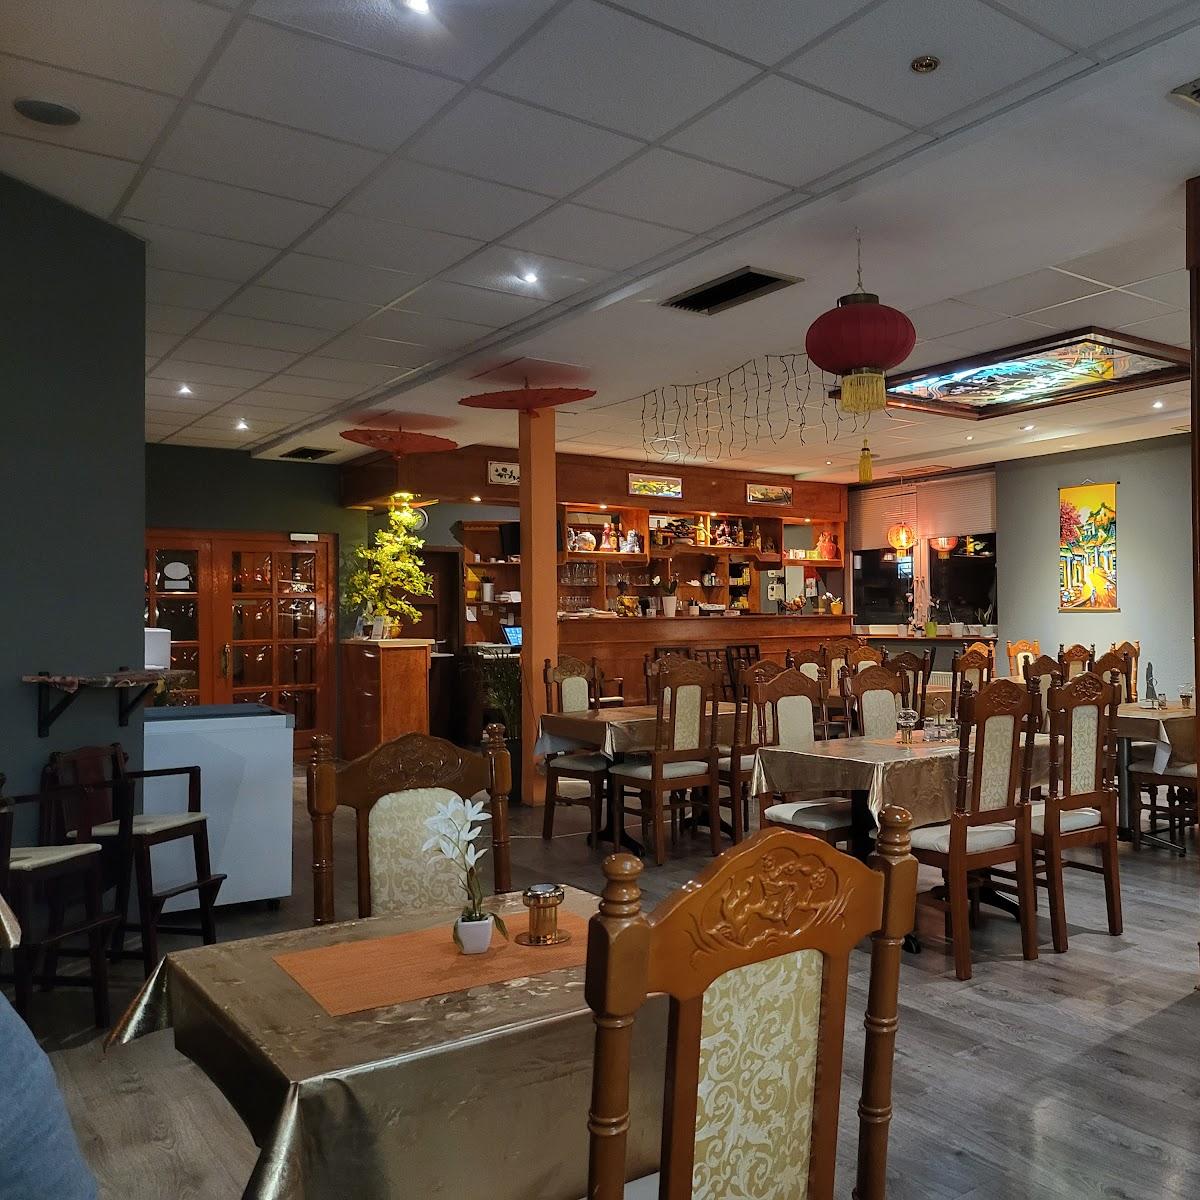 Restaurant "Viet-Thai Asia Restaurant" in Fehmarn